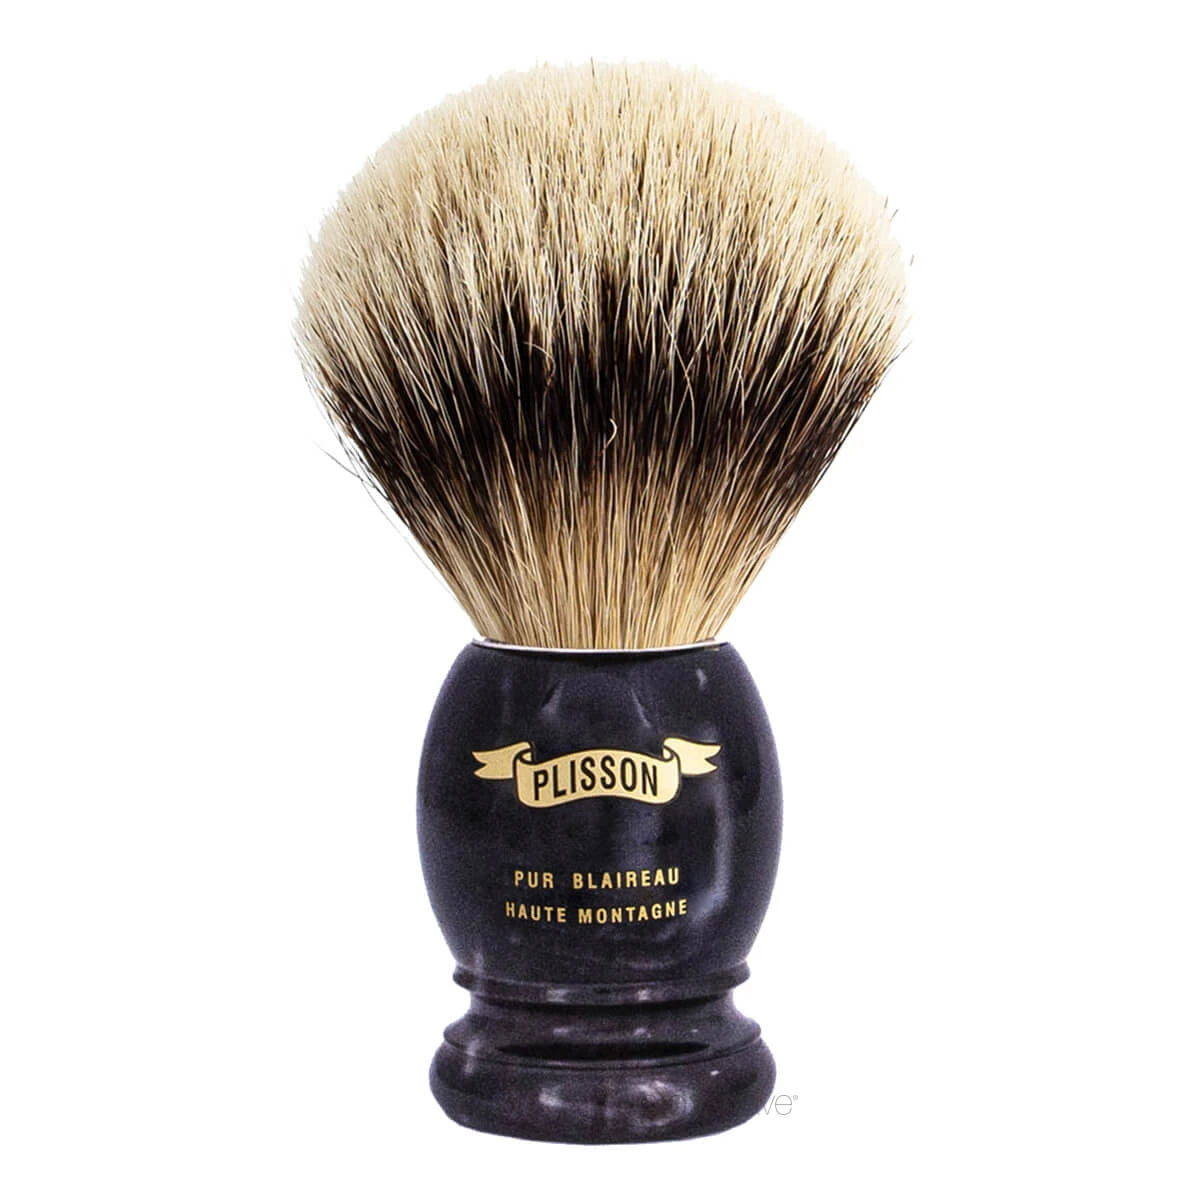 Plisson Shaving Brush, High Mountain White Badger & Genuine Black Horn- Size 12